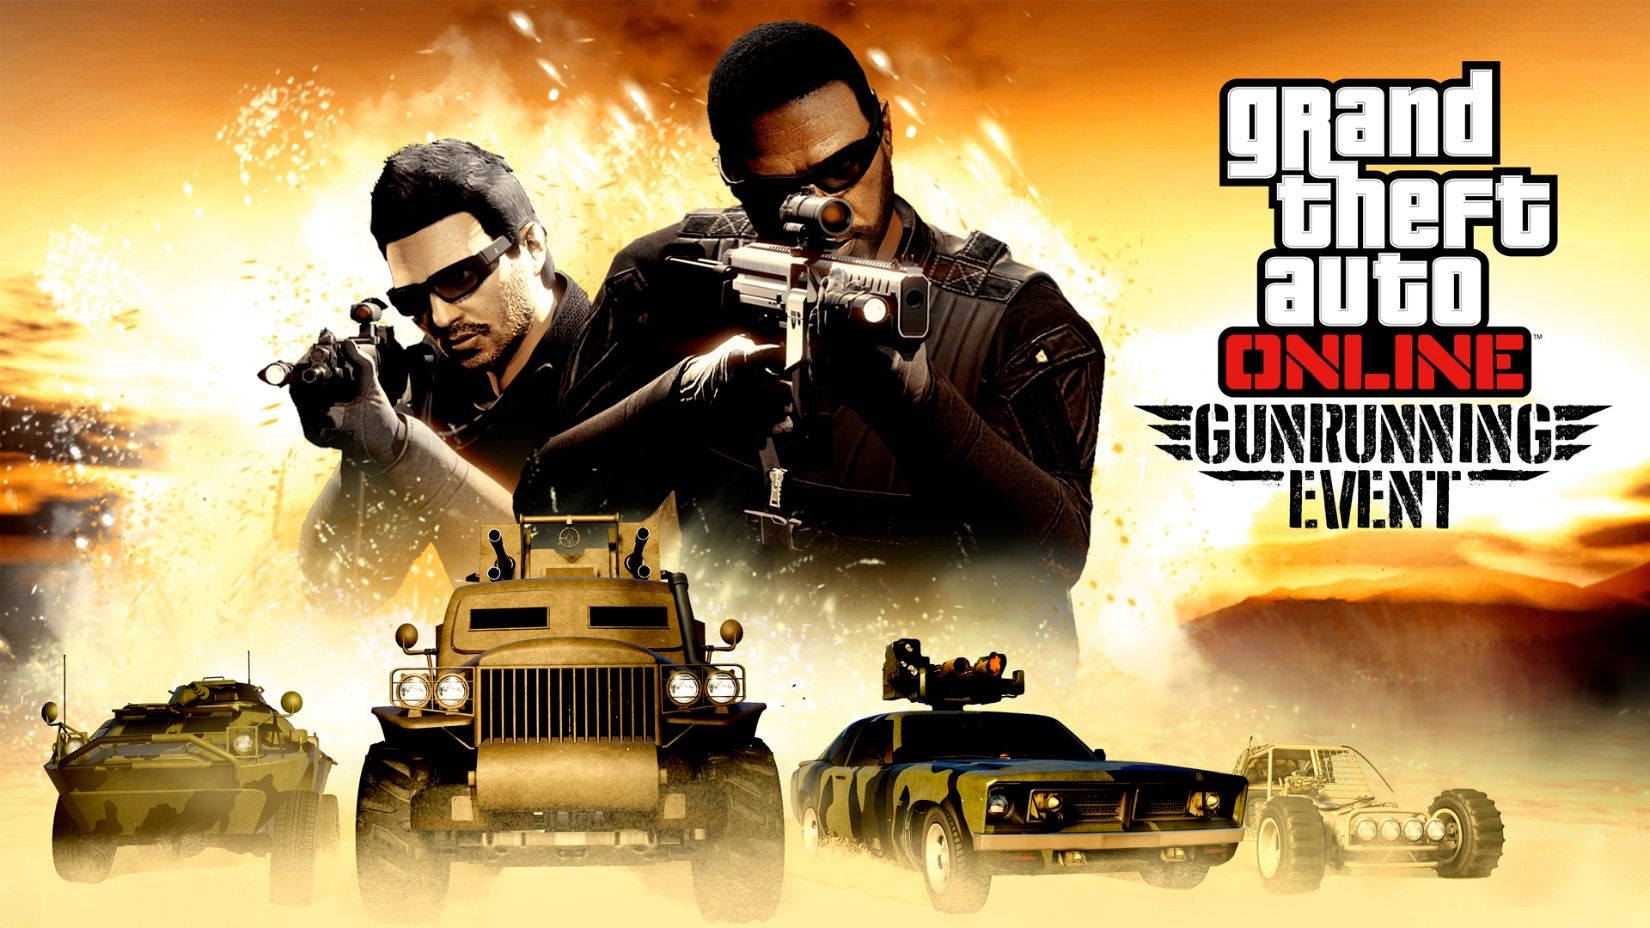 GTA Online: immergiti nel sottosuolo e dominalo nell’evento Traffico d’armi